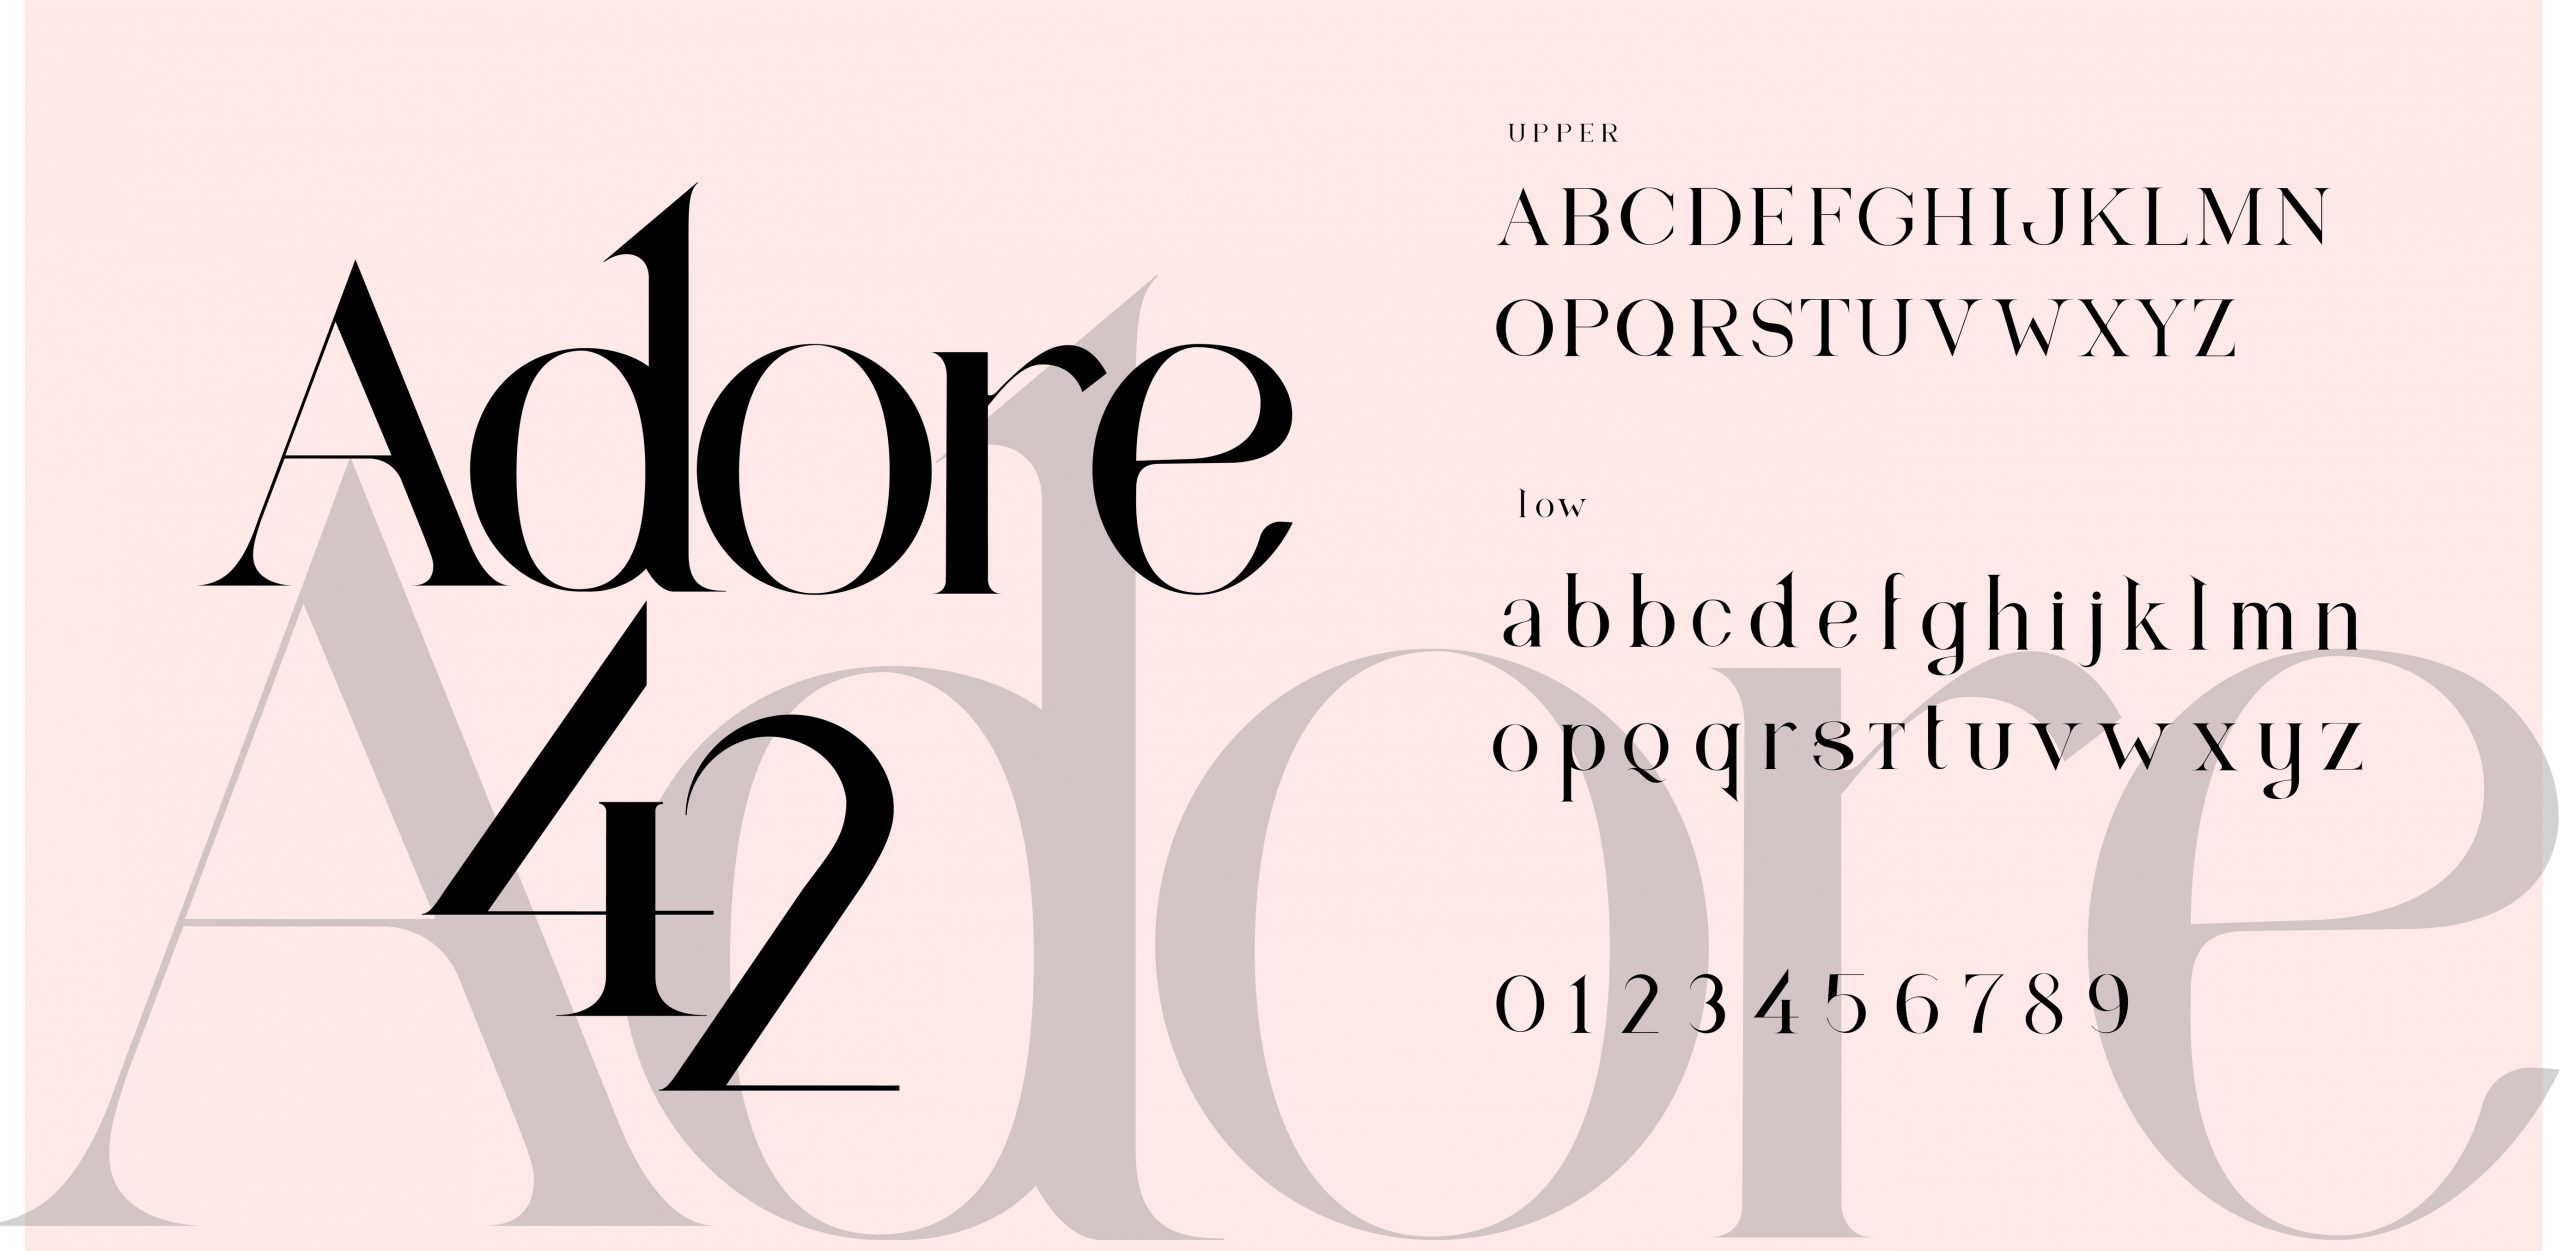 Comment choisir la bonne typographie agence de communication a orleans buzznative